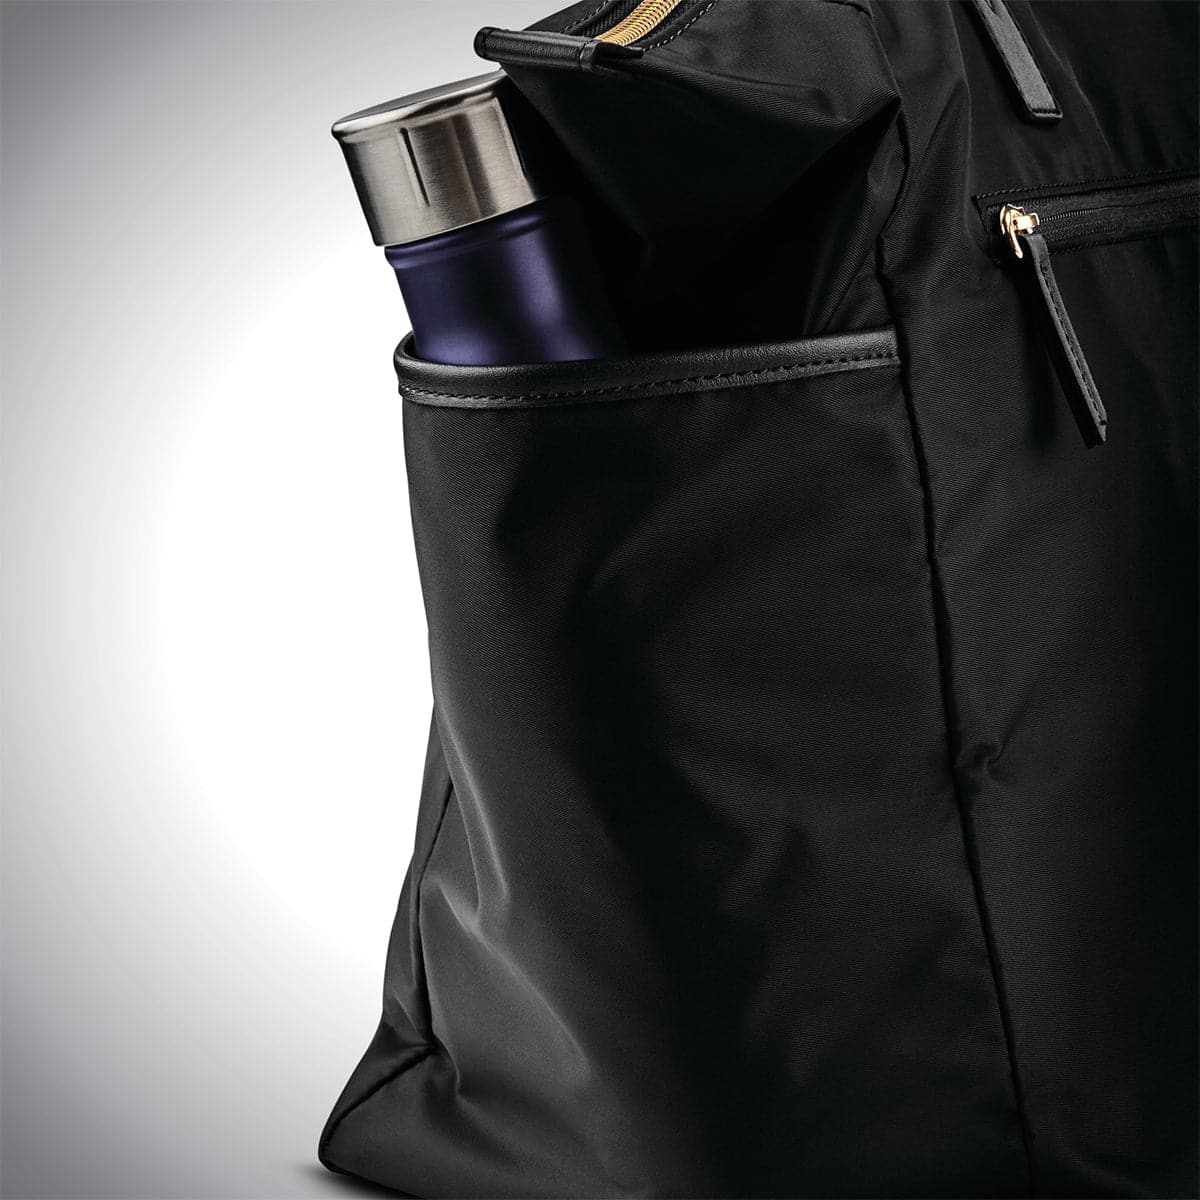 Samsonite Mobile Solution Deluxe Carryall Bag